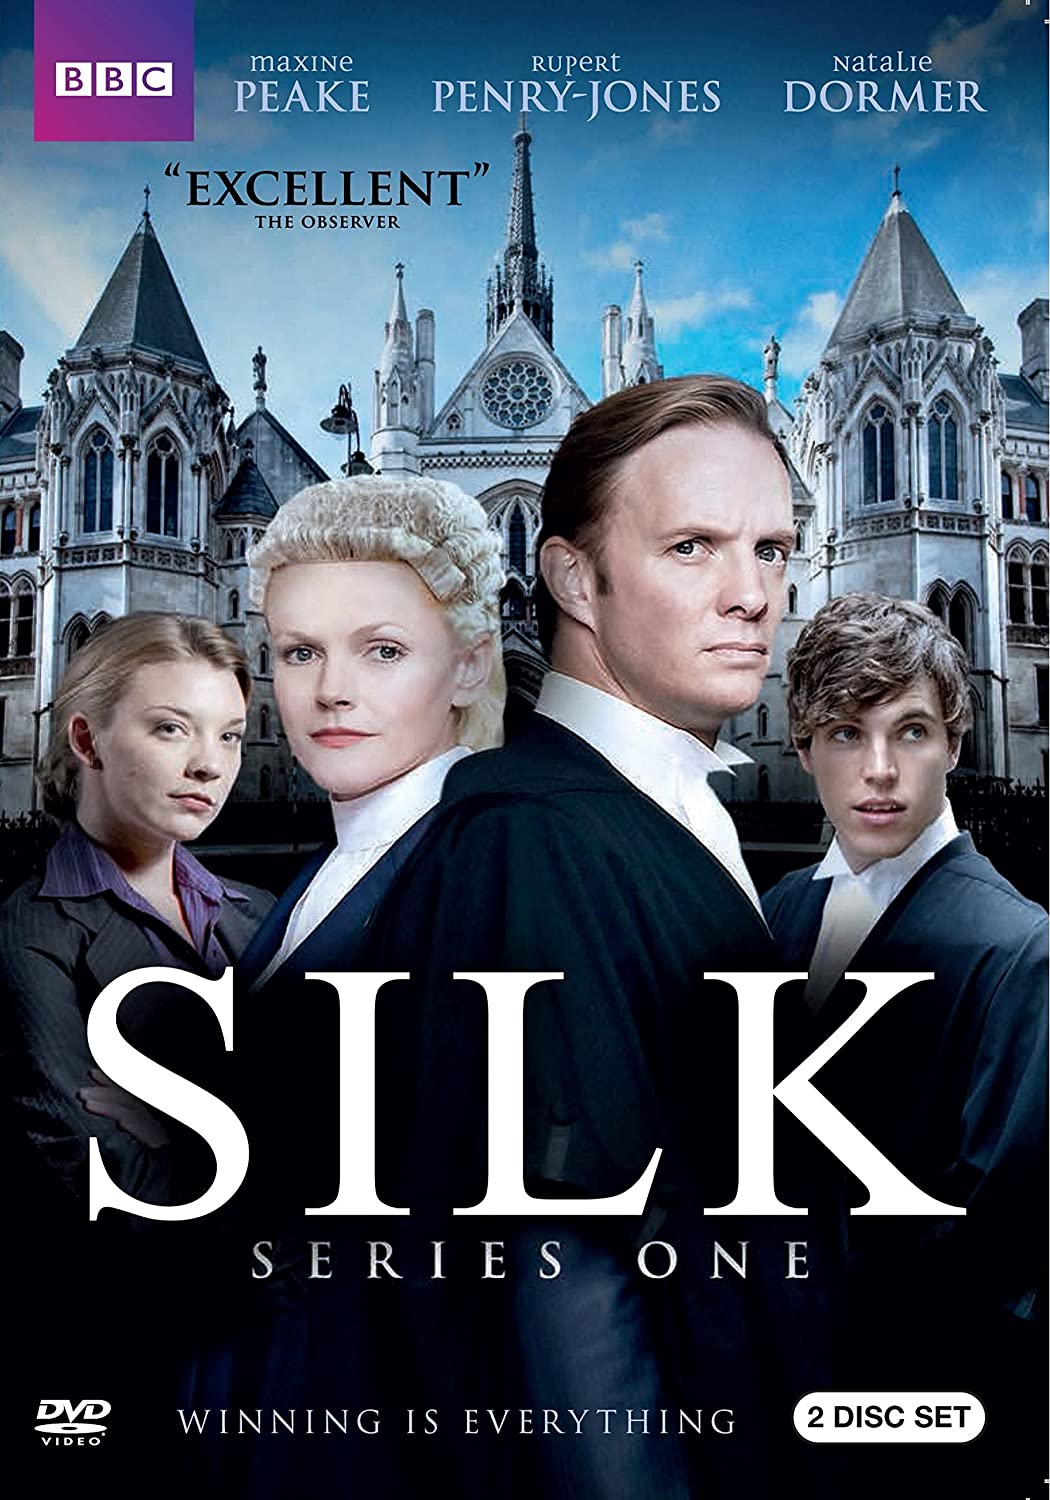 Silk (2011)